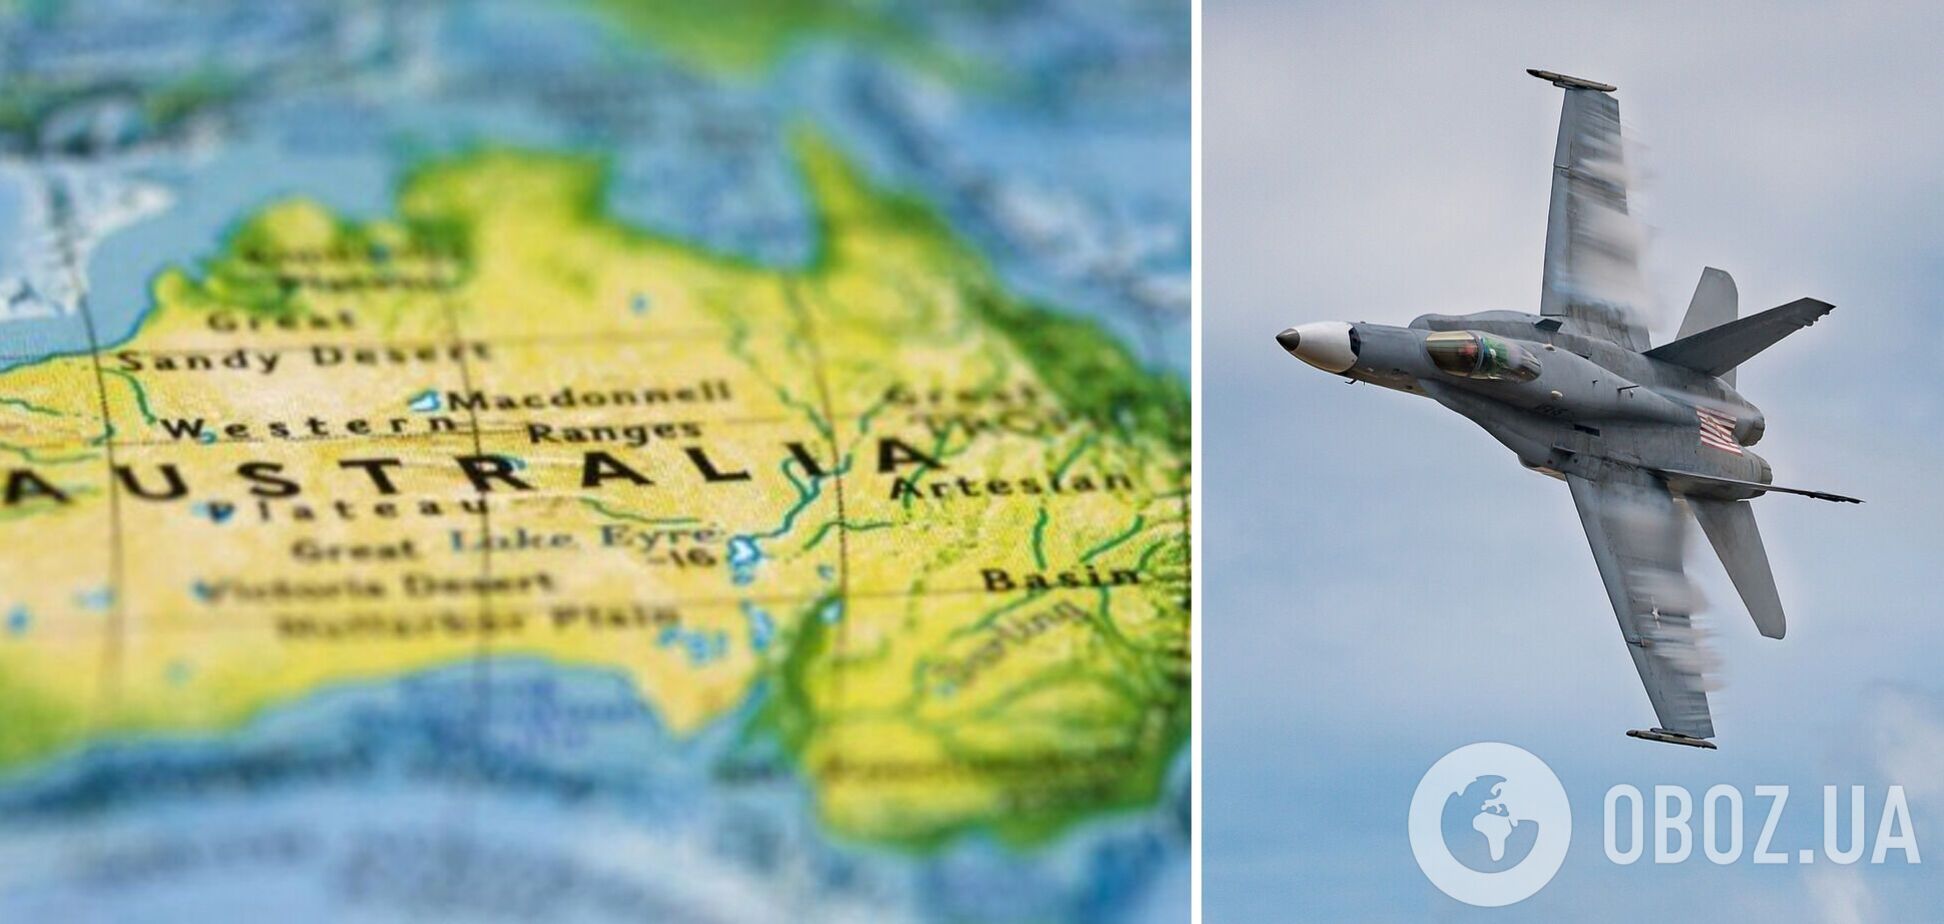 Украина направила в Австралию запрос о передаче истребителей F-18: речь идет о 41 самолете